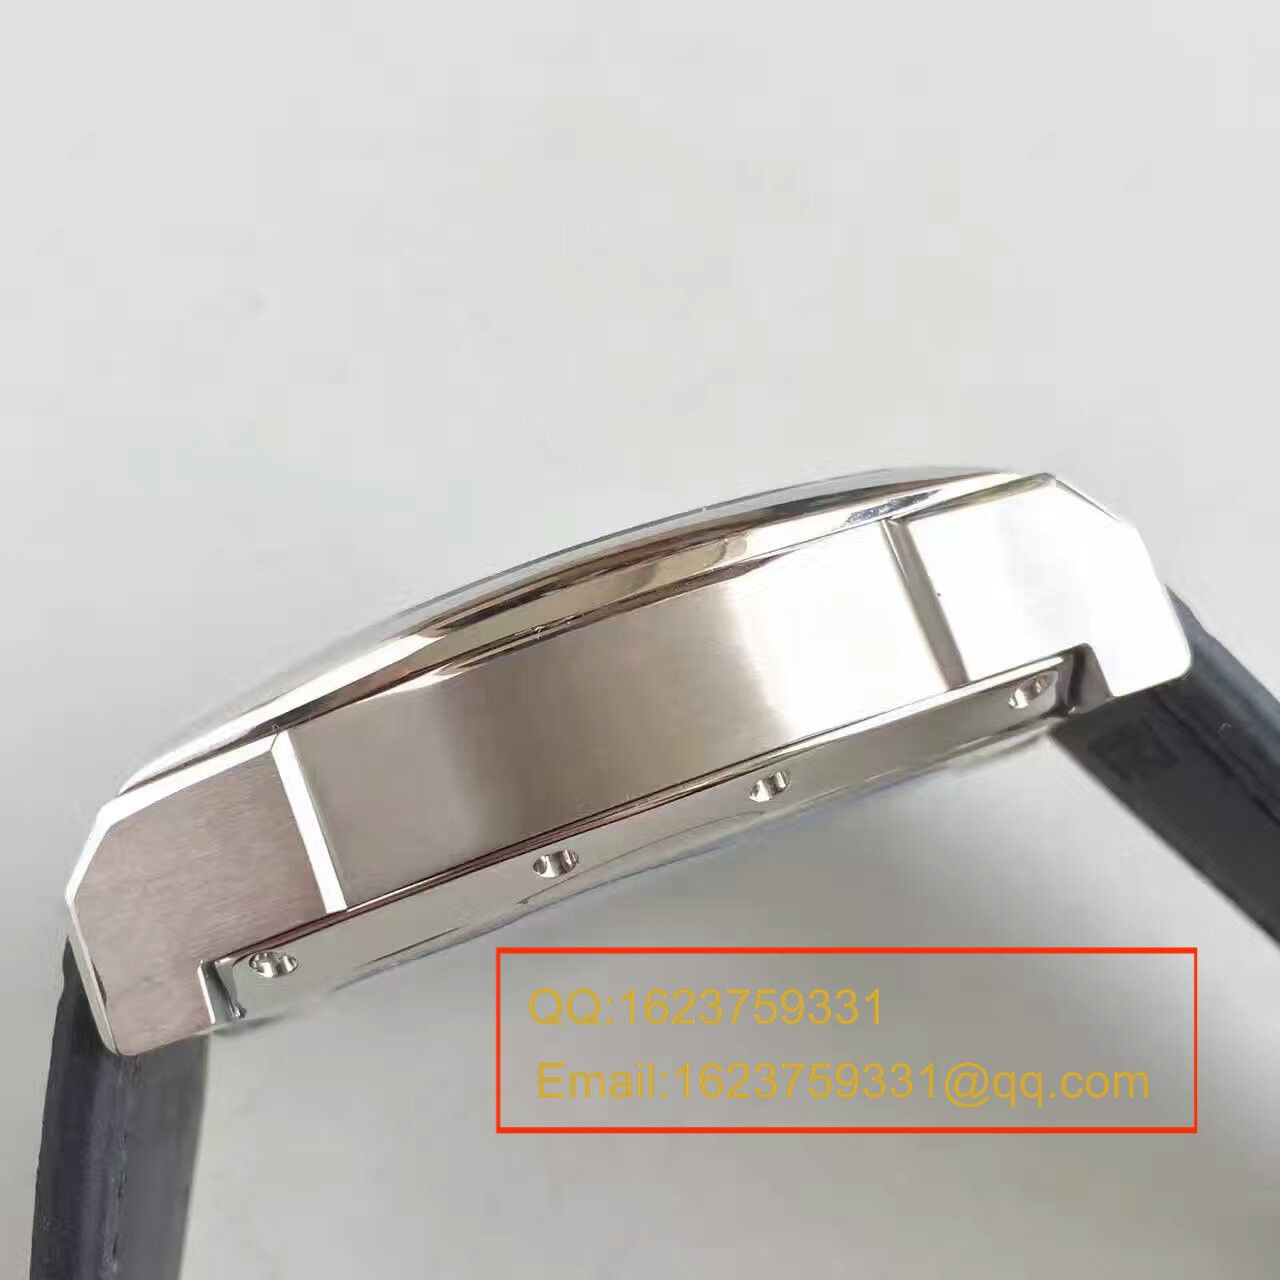 【ZF厂顶级复刻手表】万国达文西系列IW376404腕表 / WG262